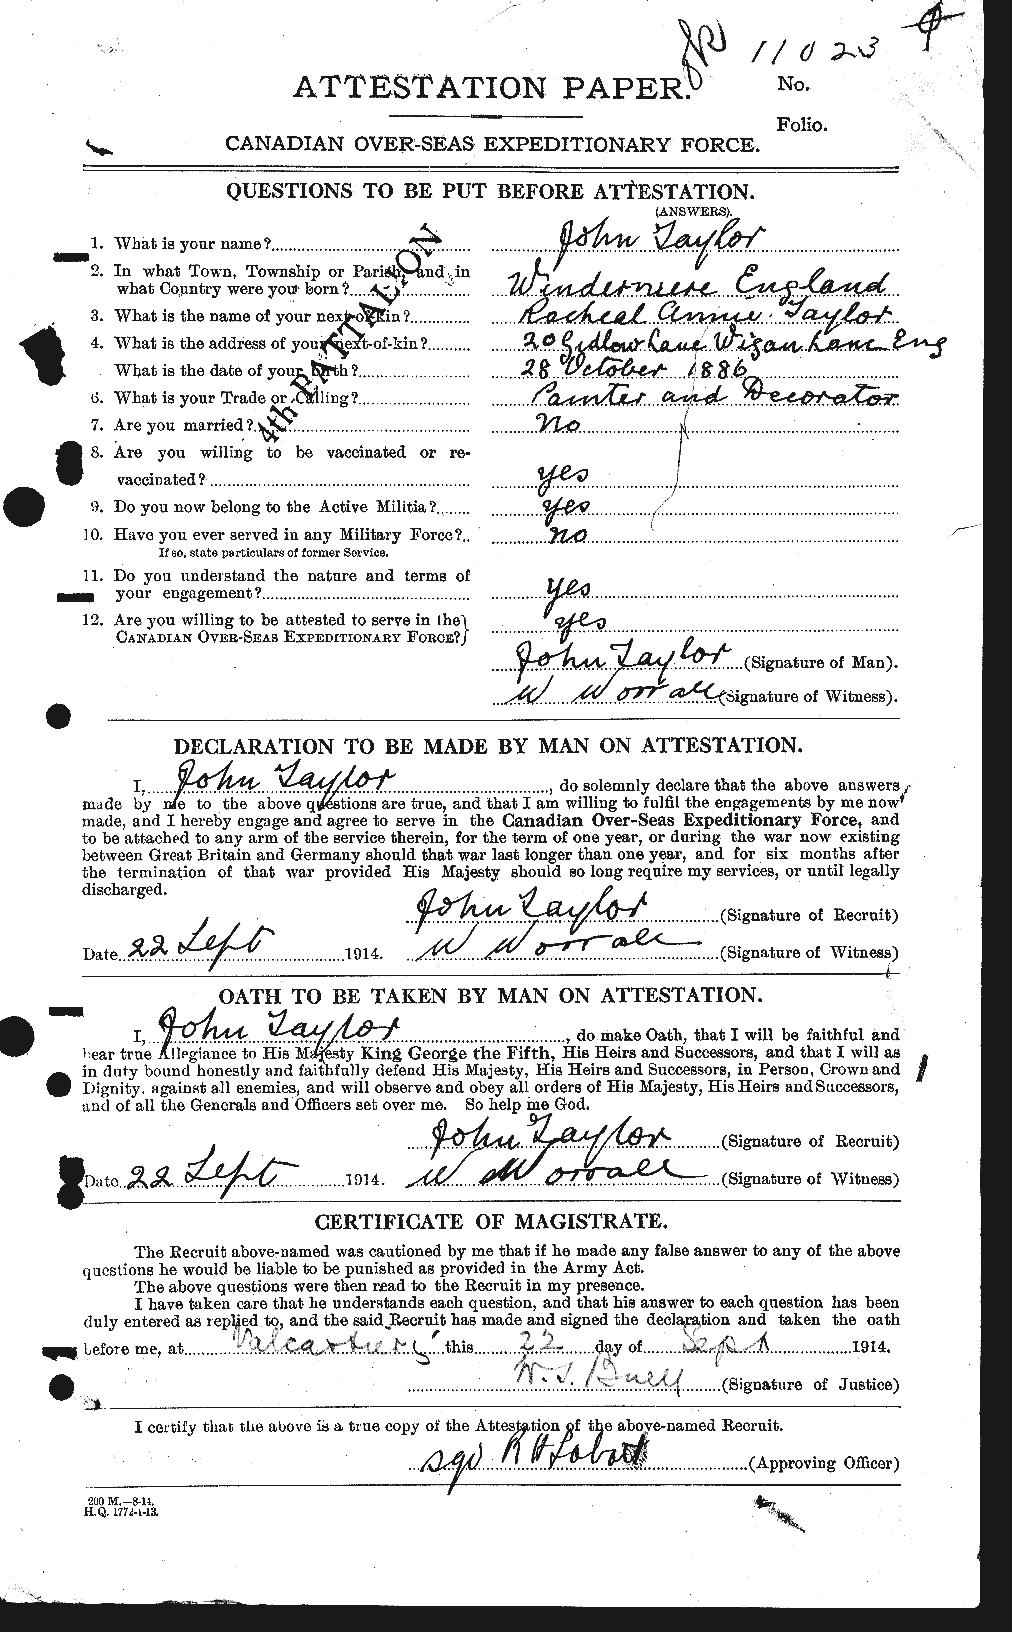 Dossiers du Personnel de la Première Guerre mondiale - CEC 626981a